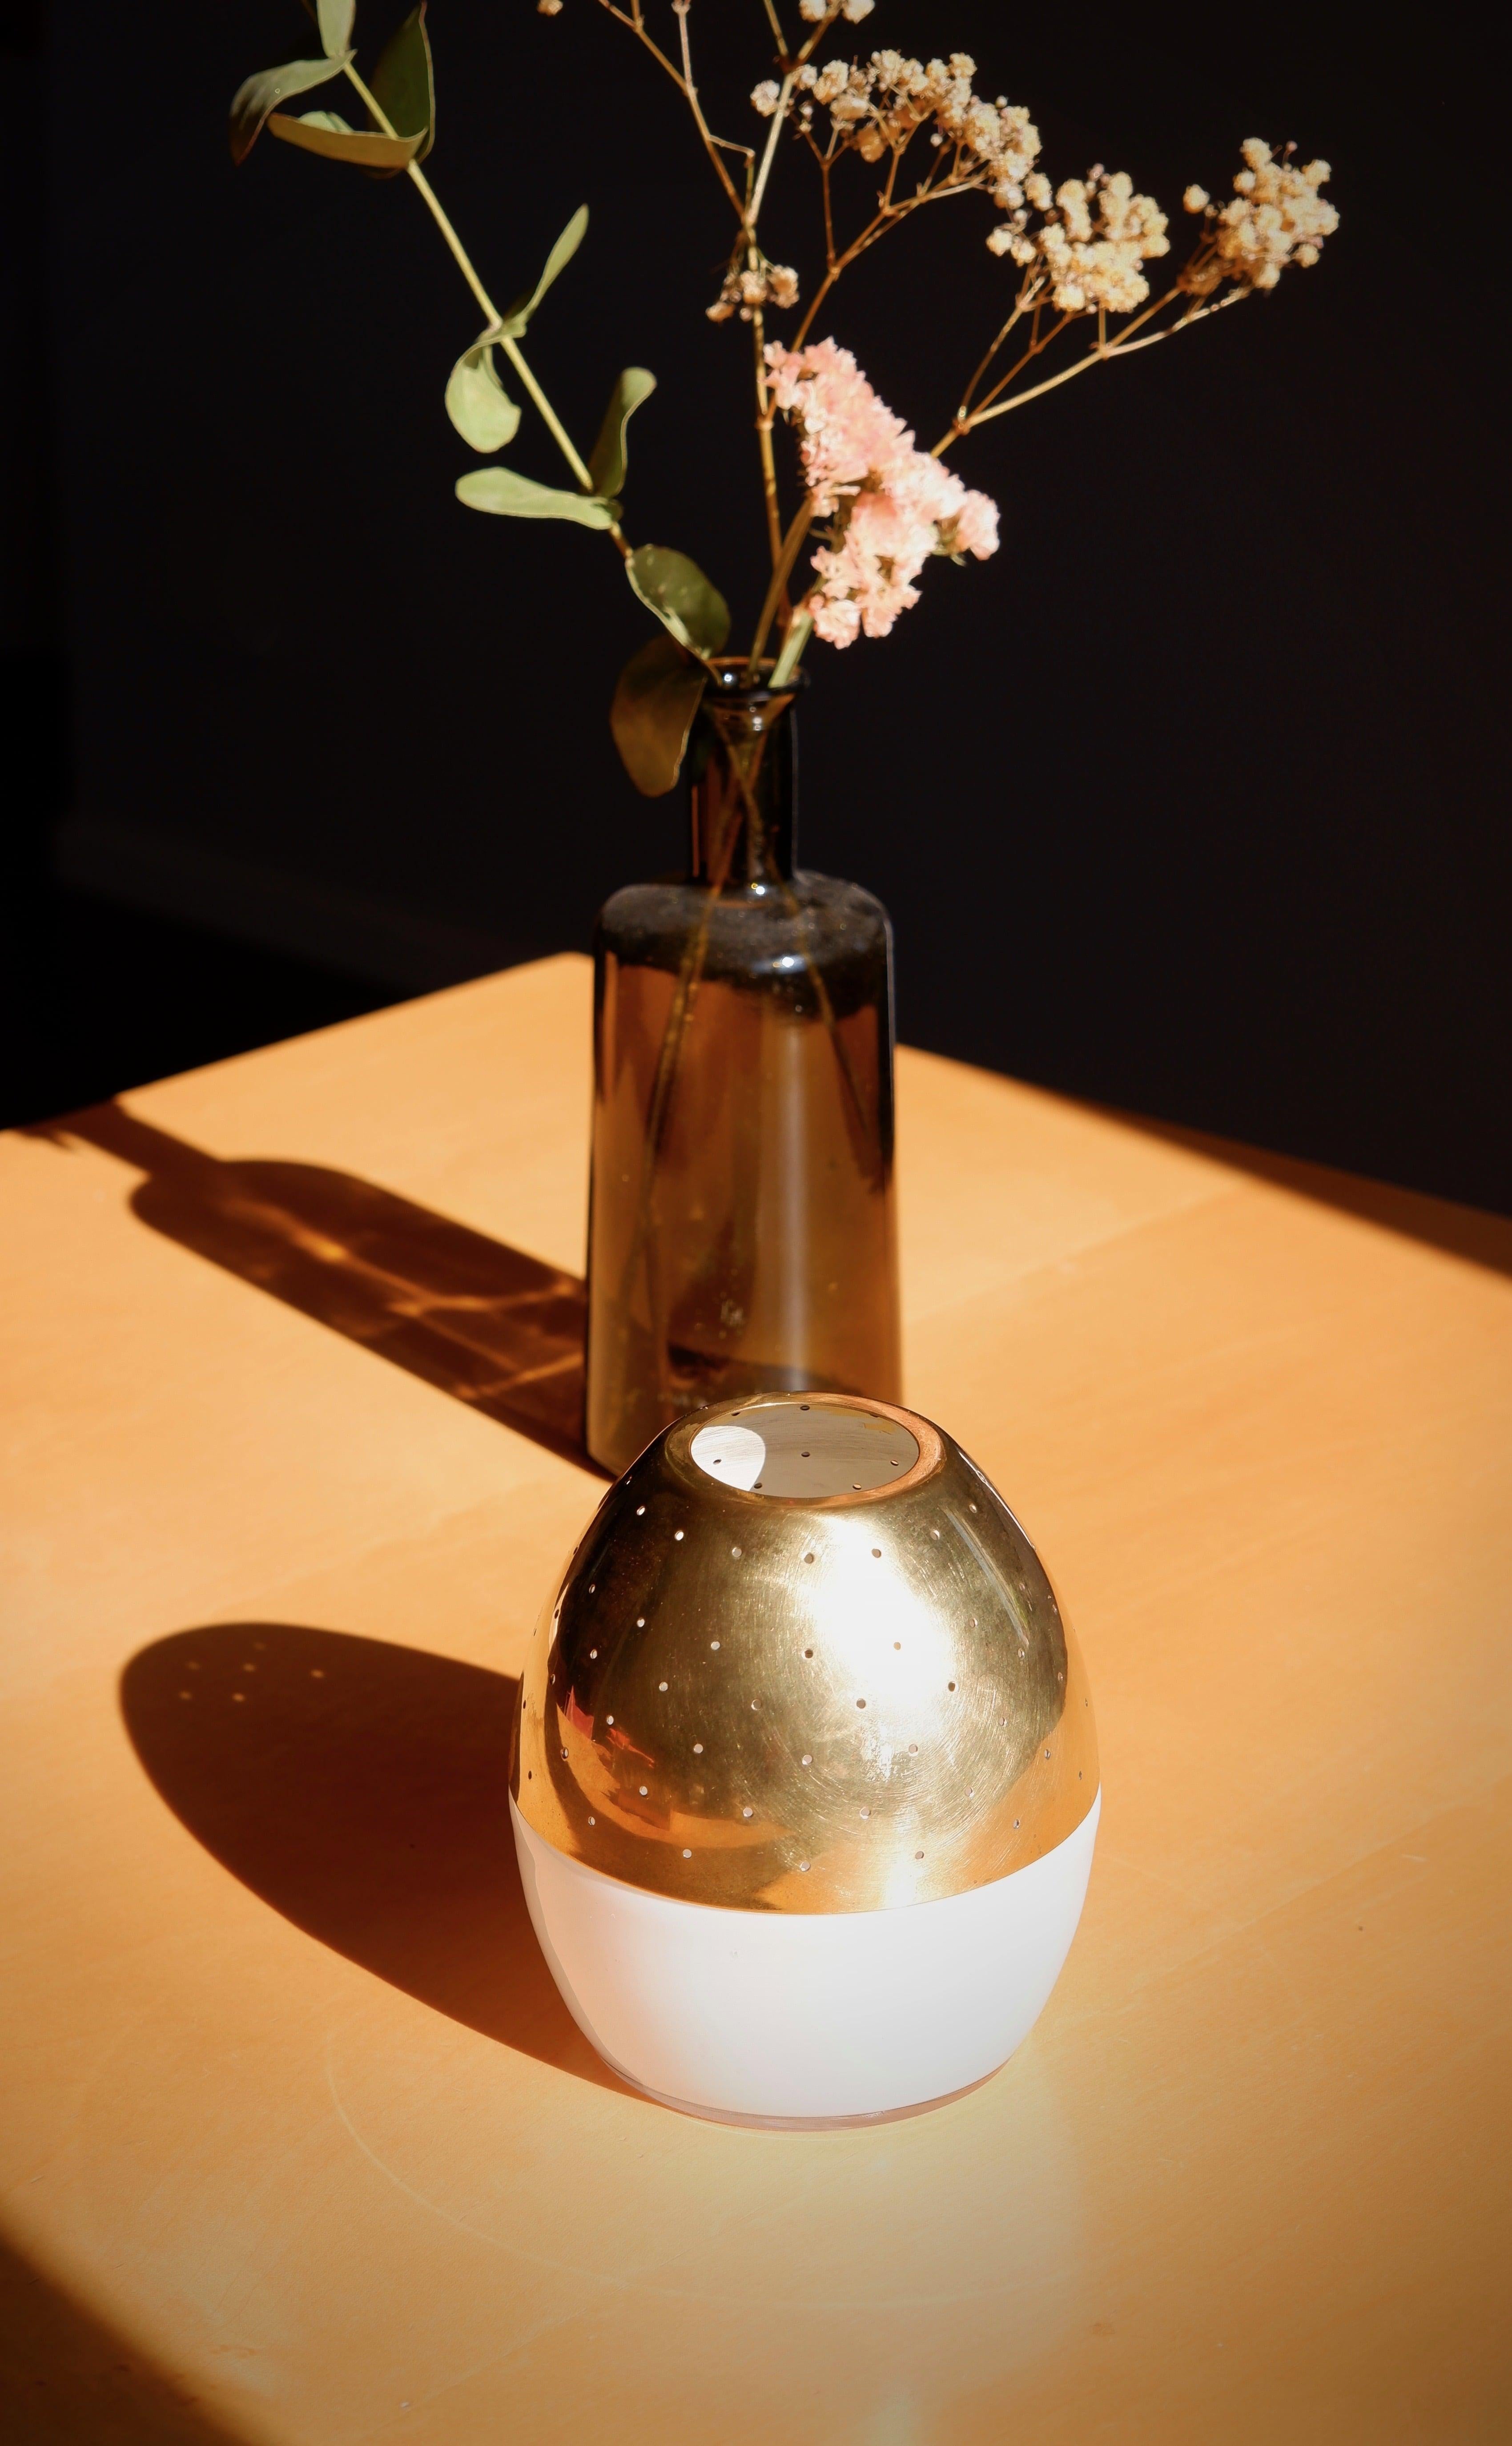 Lampe à bougie rare et spéciale conçue par Hans Agne Jakobsson dans les années 60 et produite dans sa propre usine à Markaryd en Suède à la même époque. La lampe chandelle est composée d'une base en verre opale qui laisse la lumière s'y refléter. Il